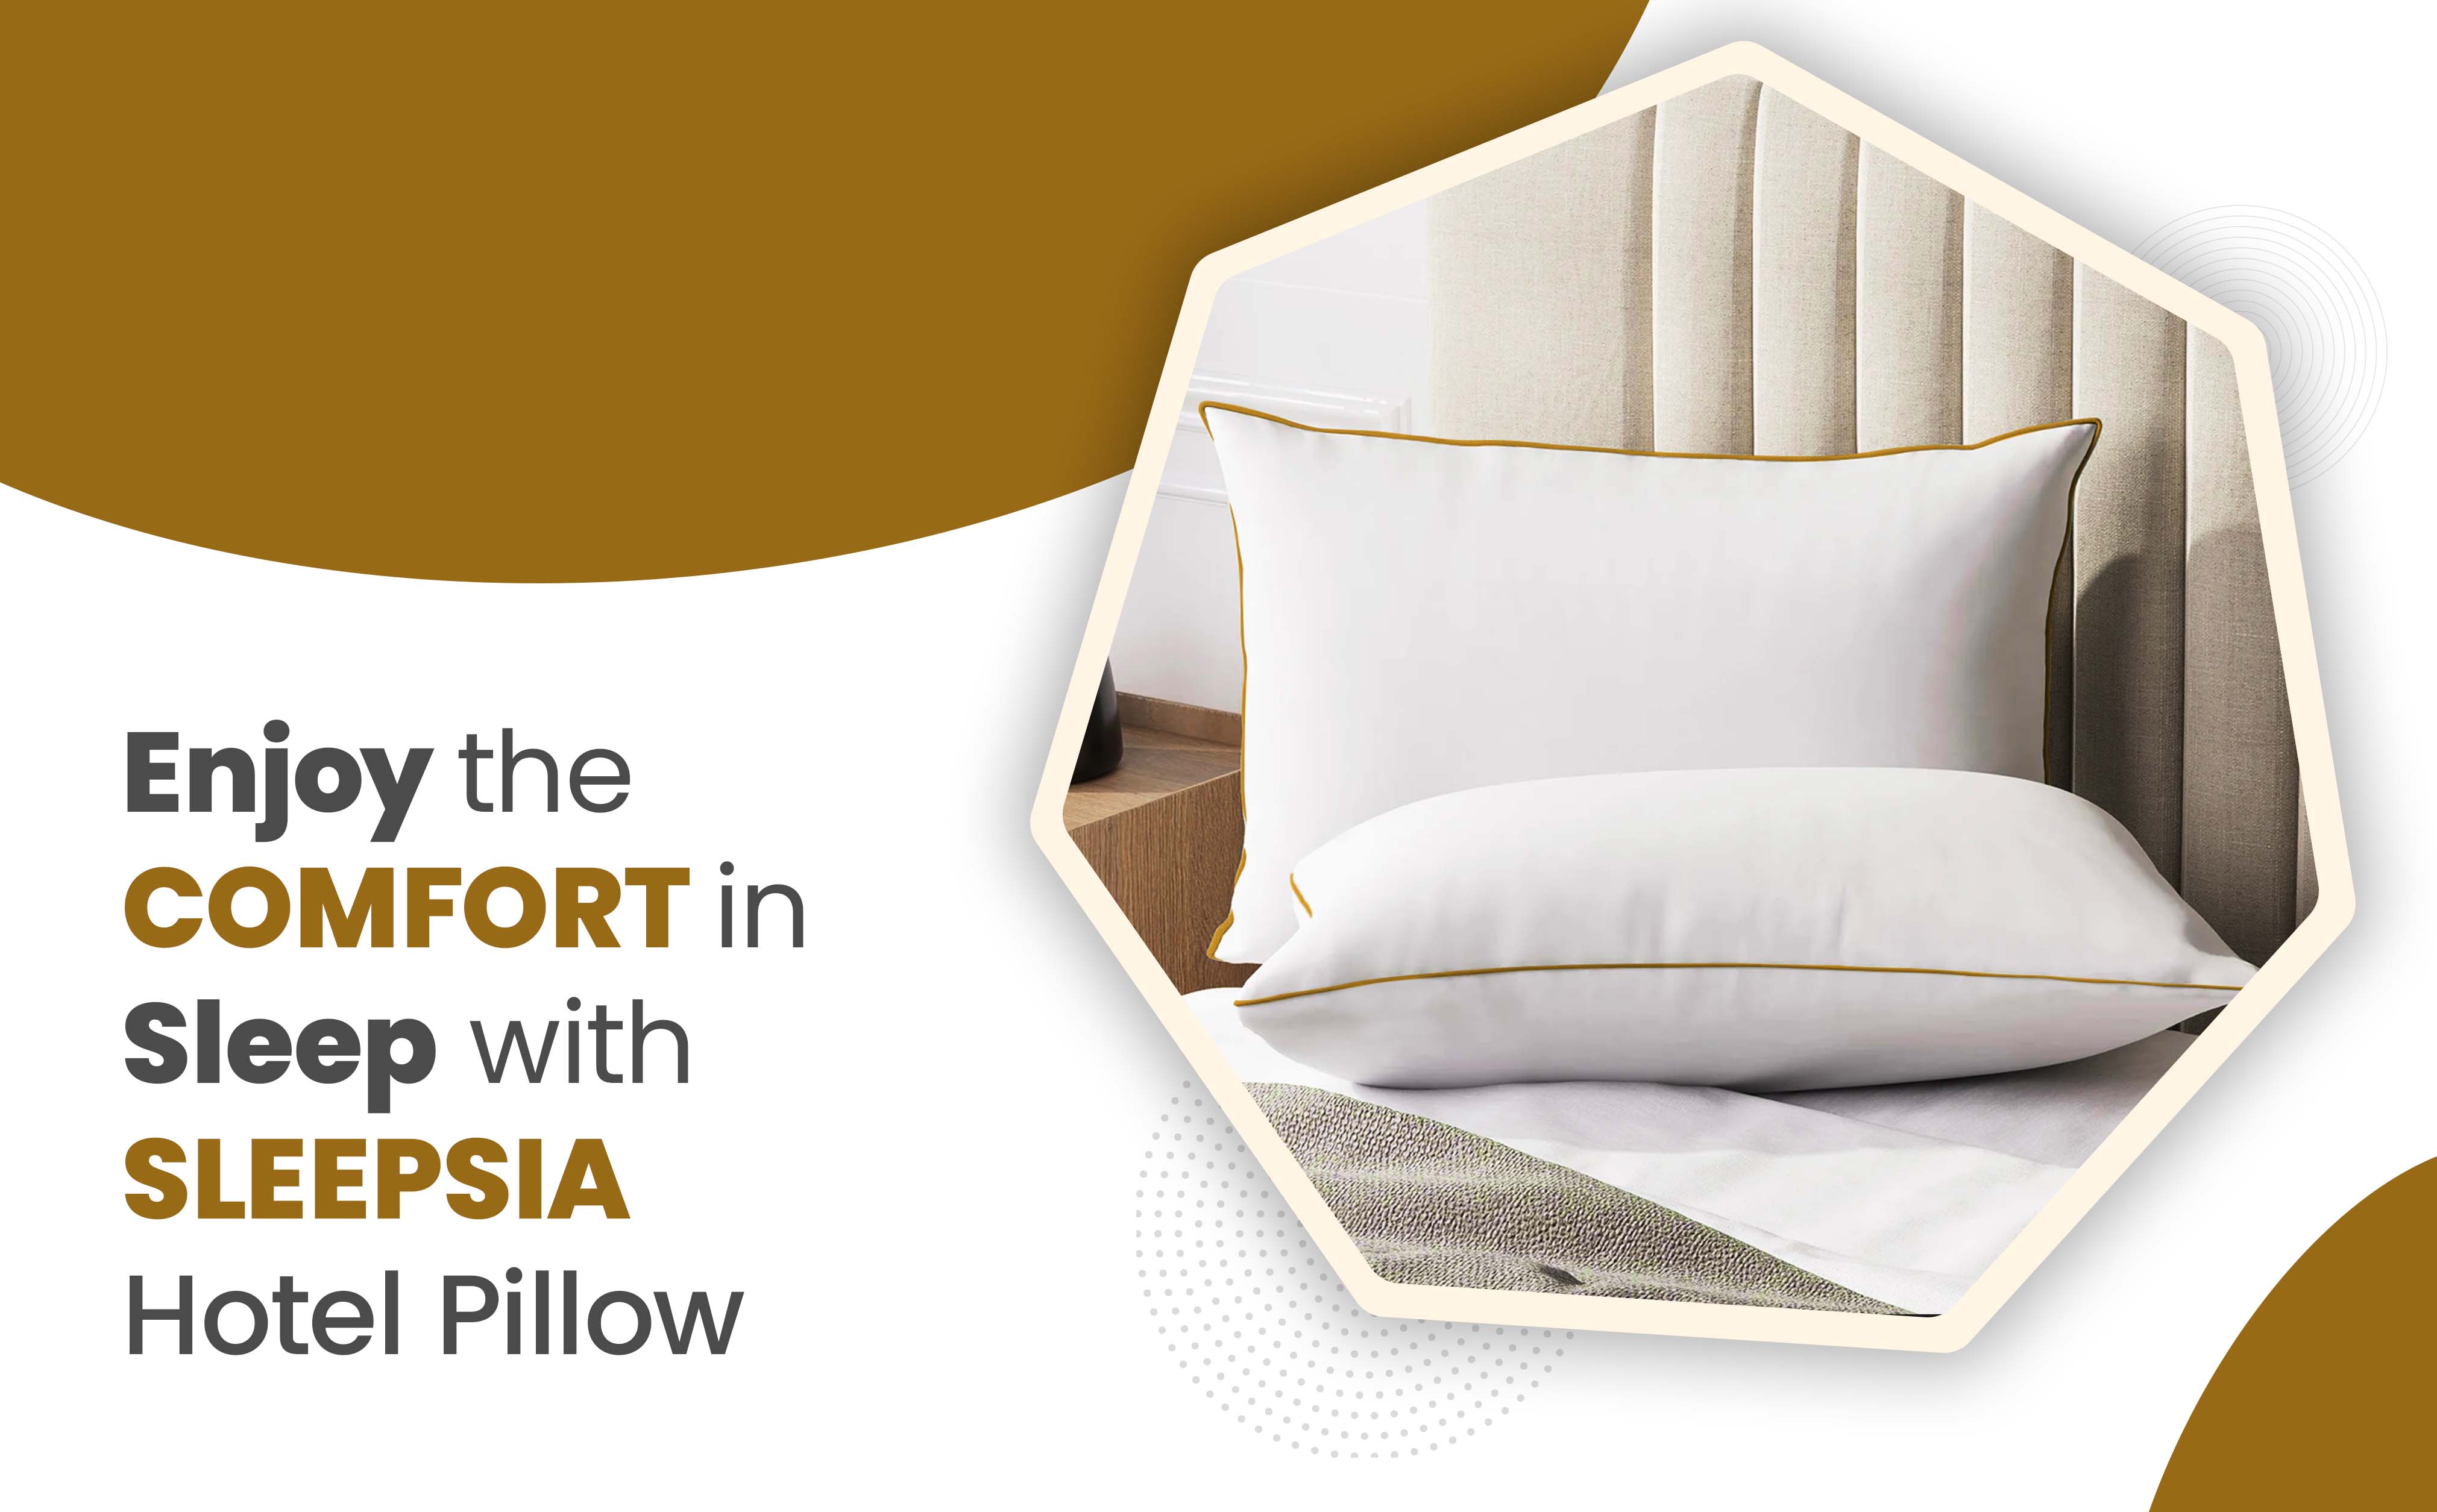 Sleep with Sleepsia Hotel Pillow